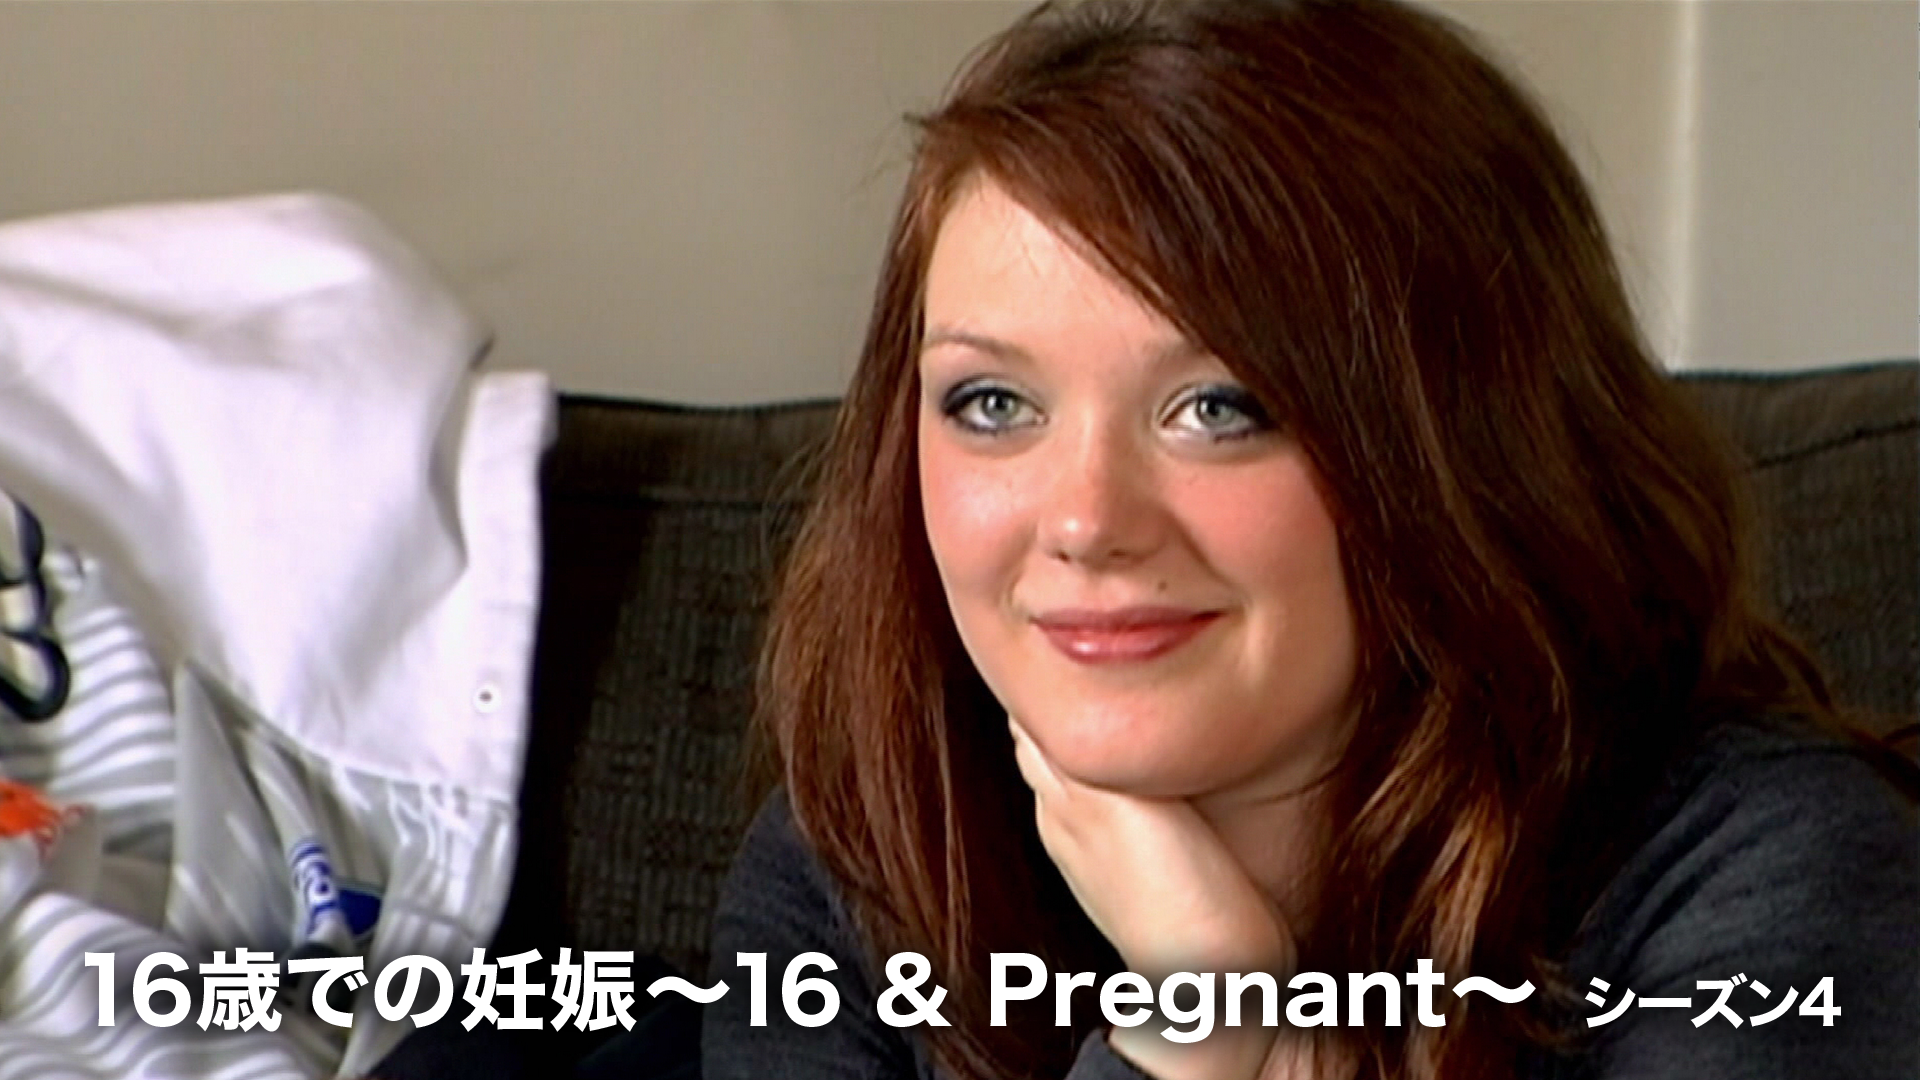 16歳での妊娠 ～16 & Pregnant～ シーズン4の動画 - 16歳での妊娠 ～16 & Pregnant～ シーズン2.5